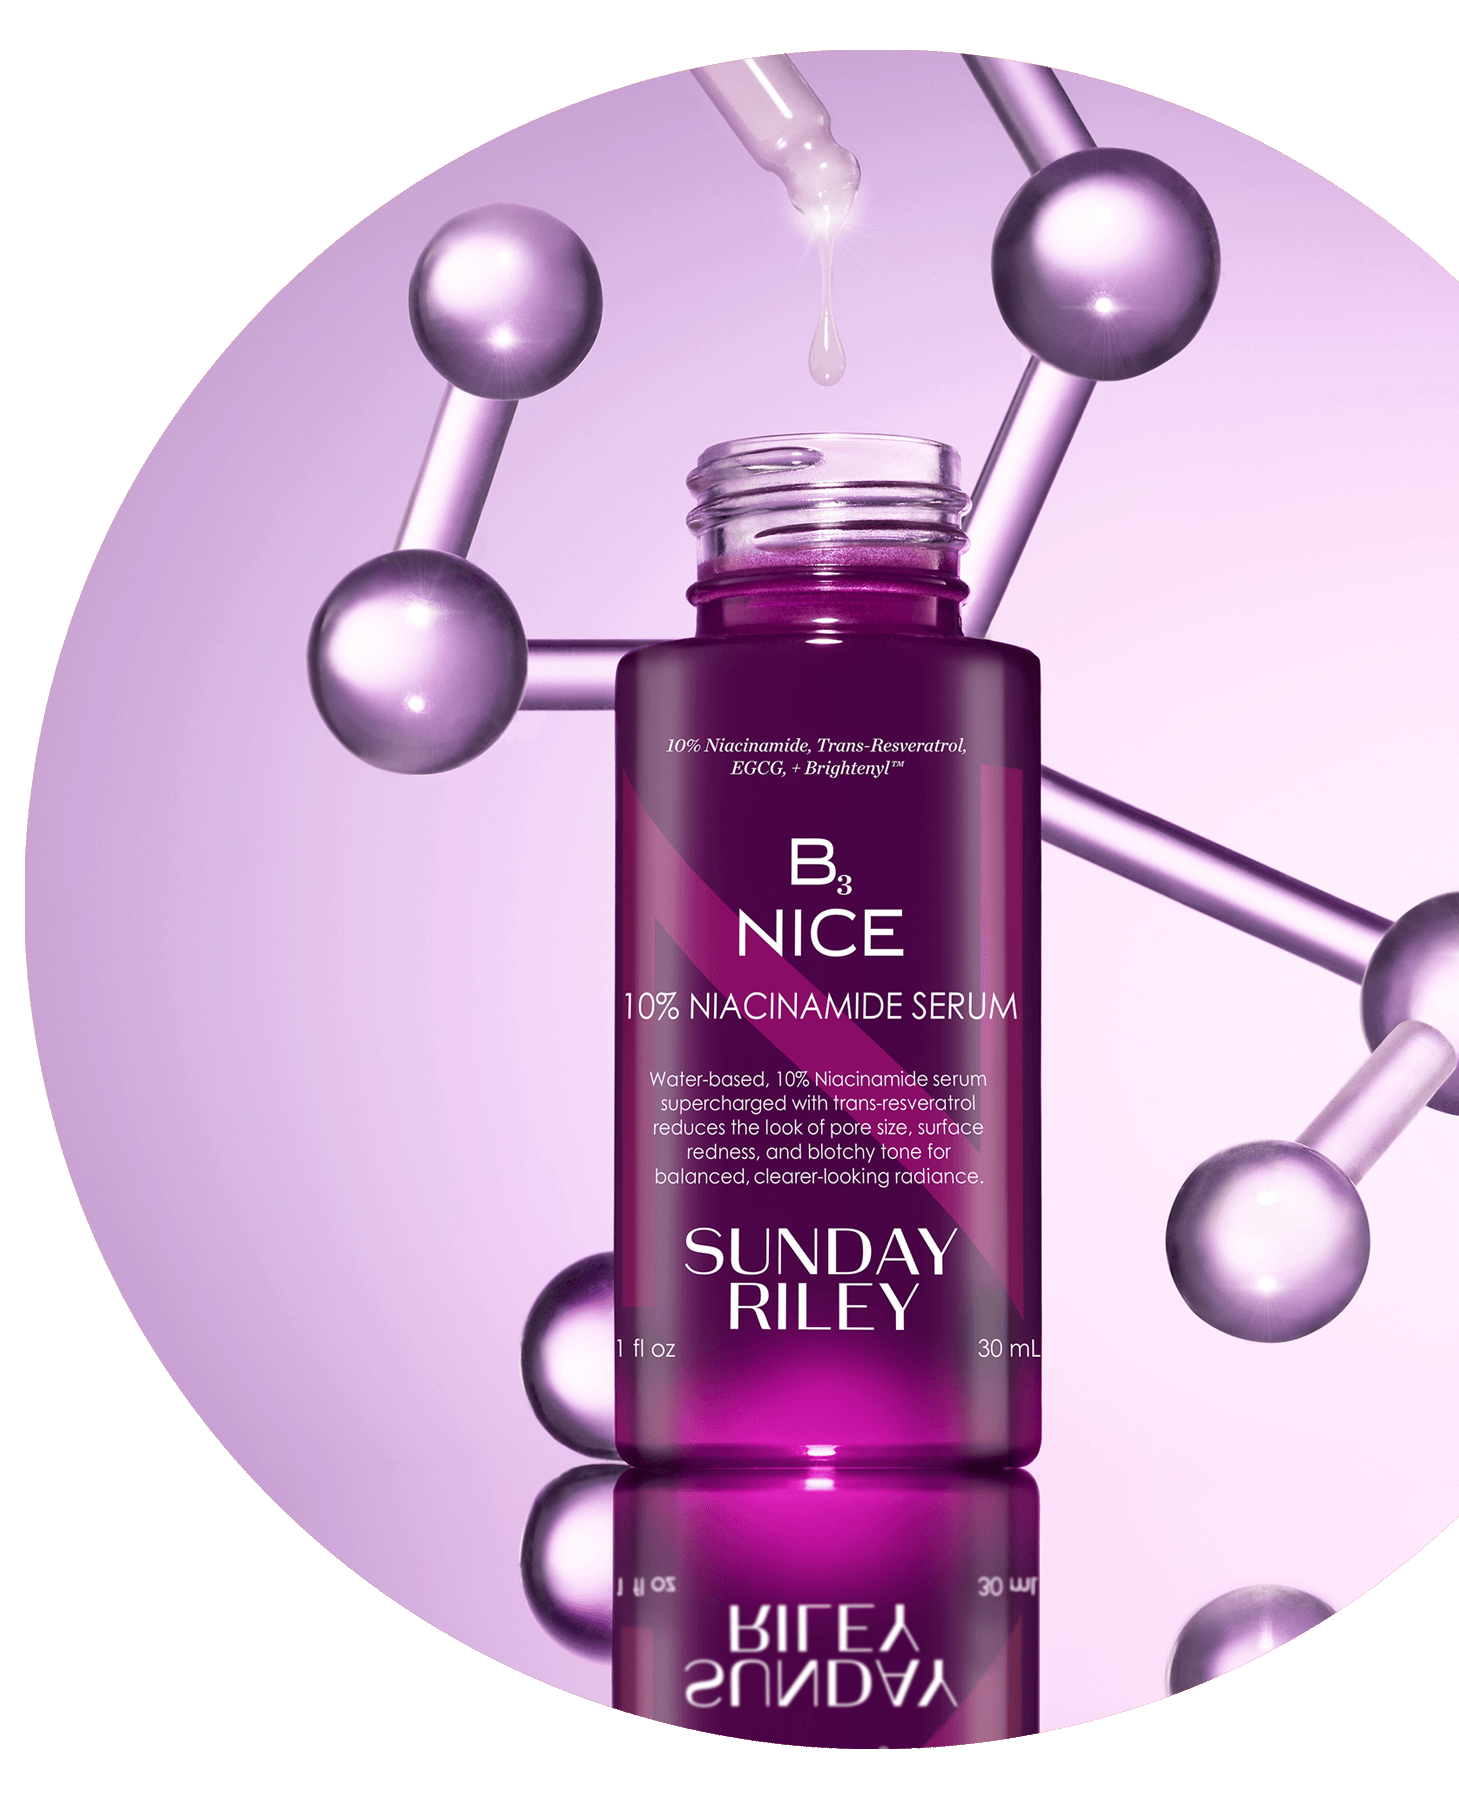 bottle of b3 nice 10% Niacinamide Serum on display